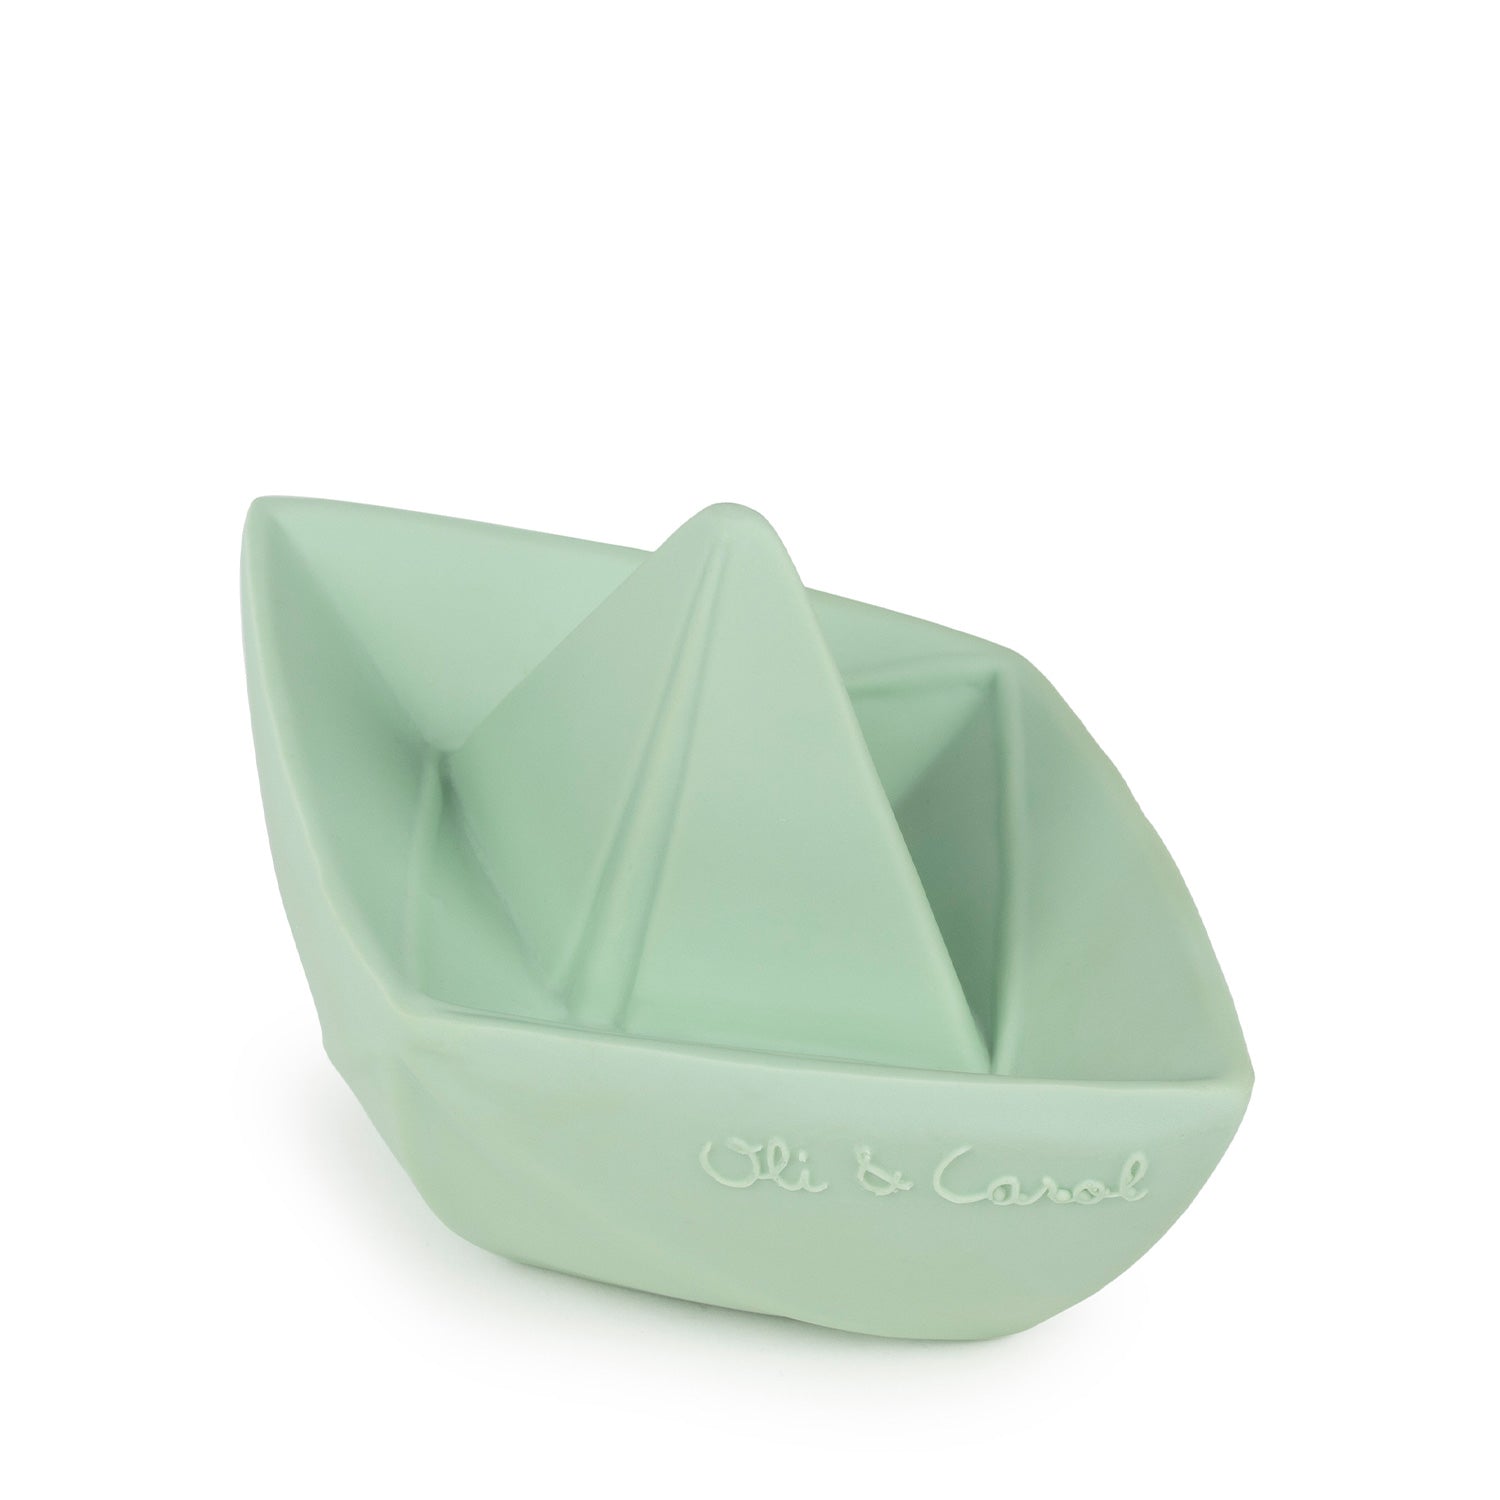 Origami Boat Mint Bath Toy - Oli&Carol